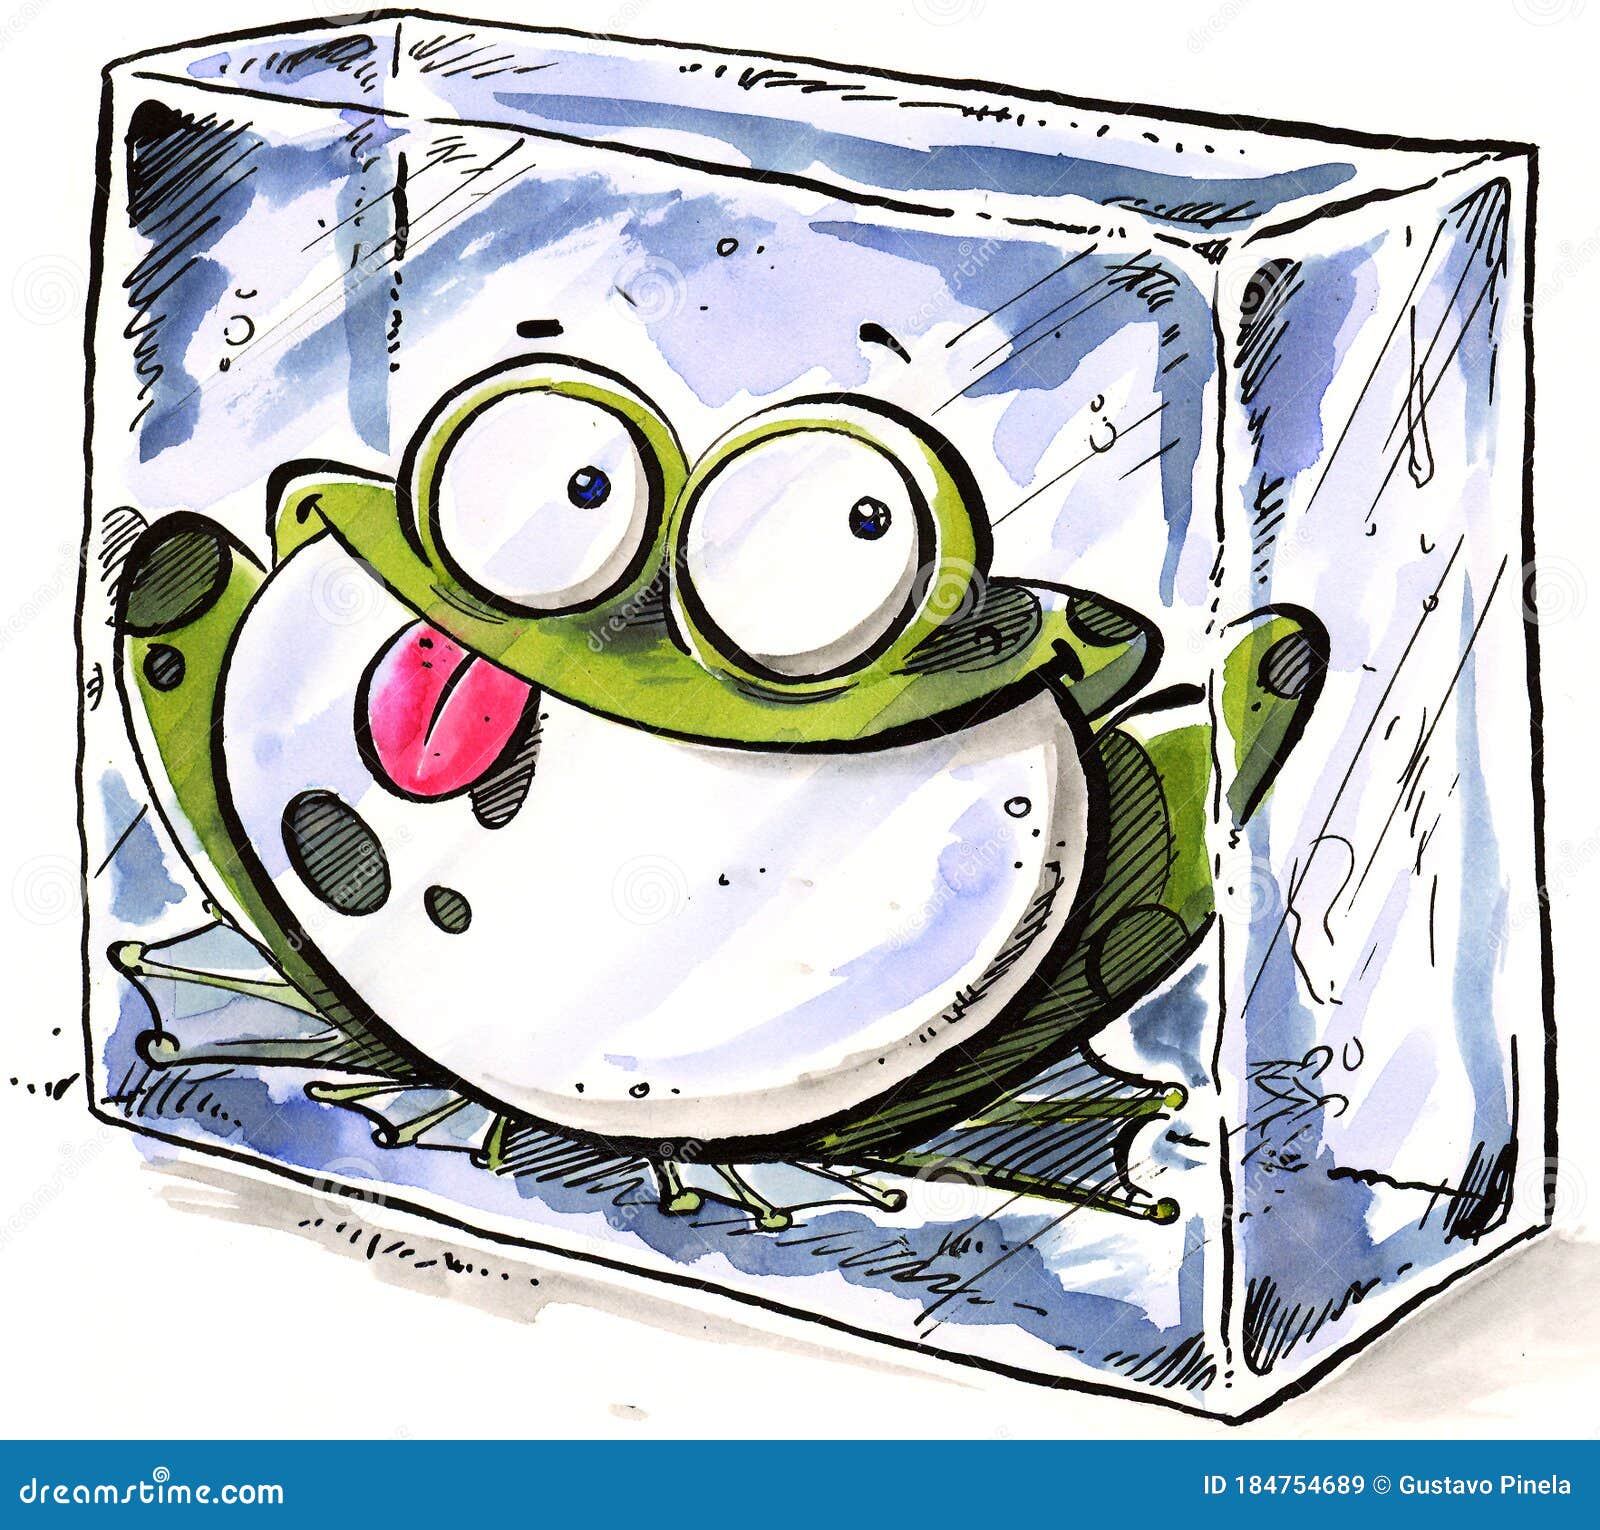 frozen frog inside a block of ice